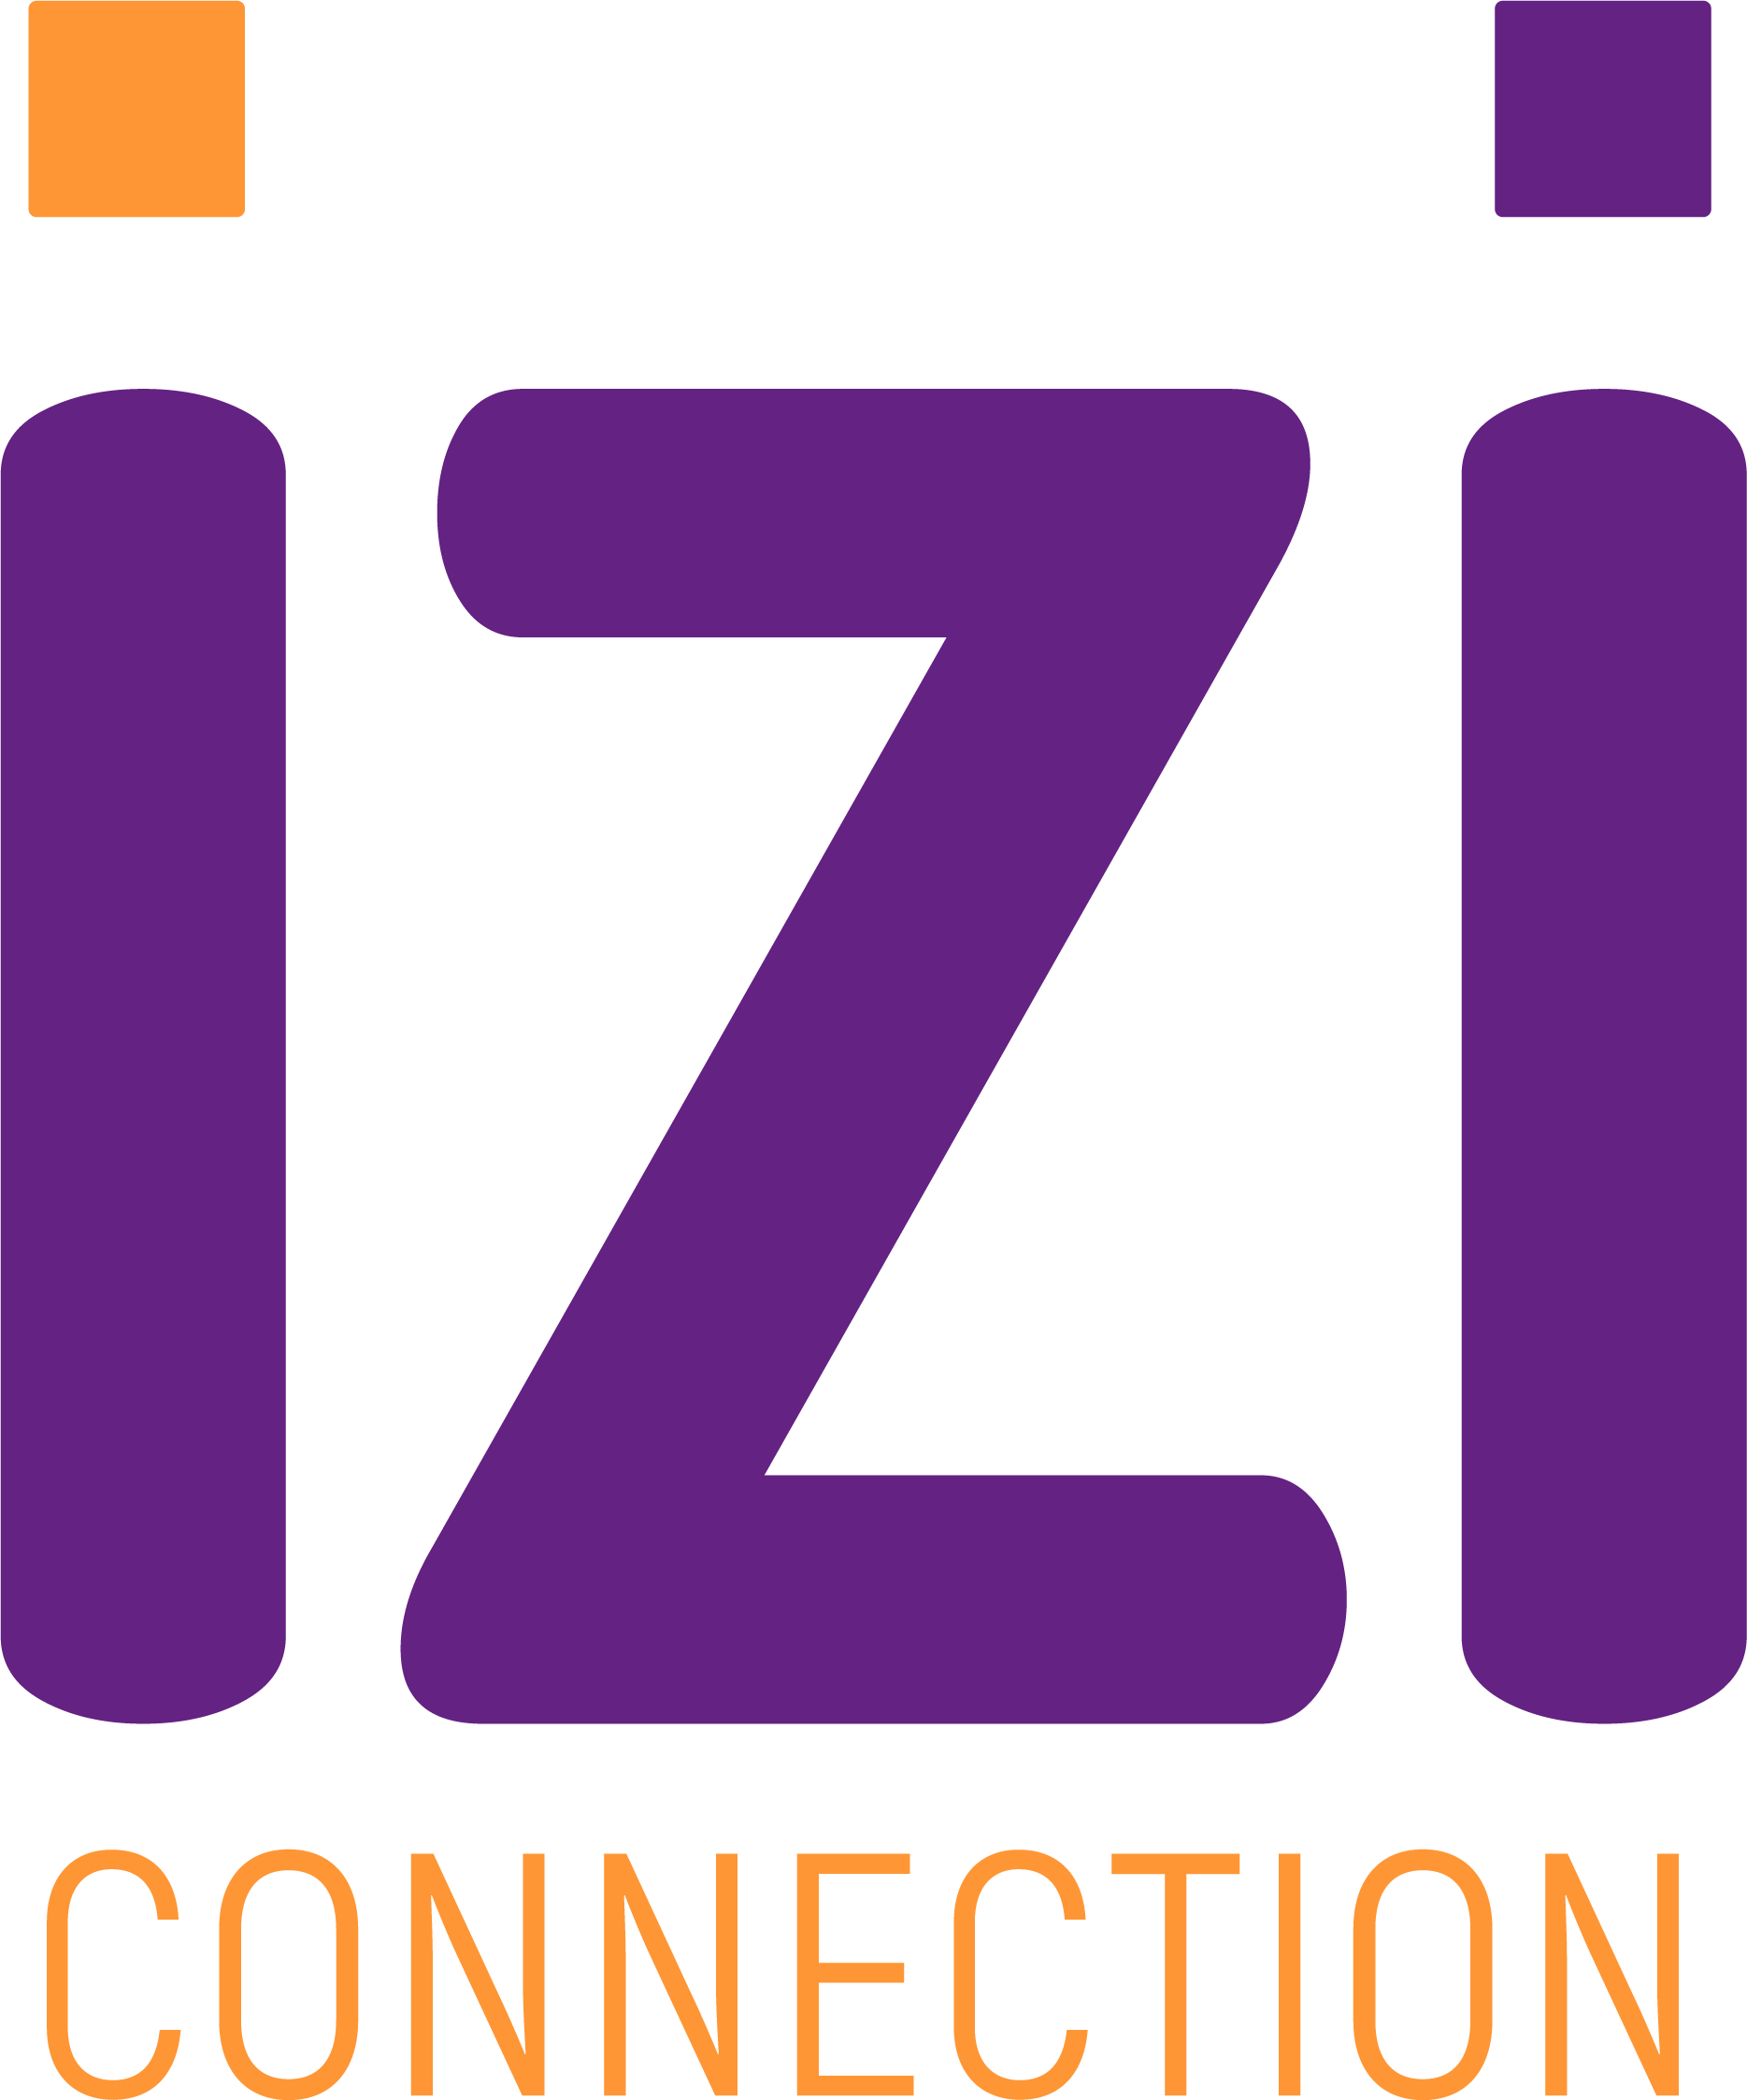 IZI Connection